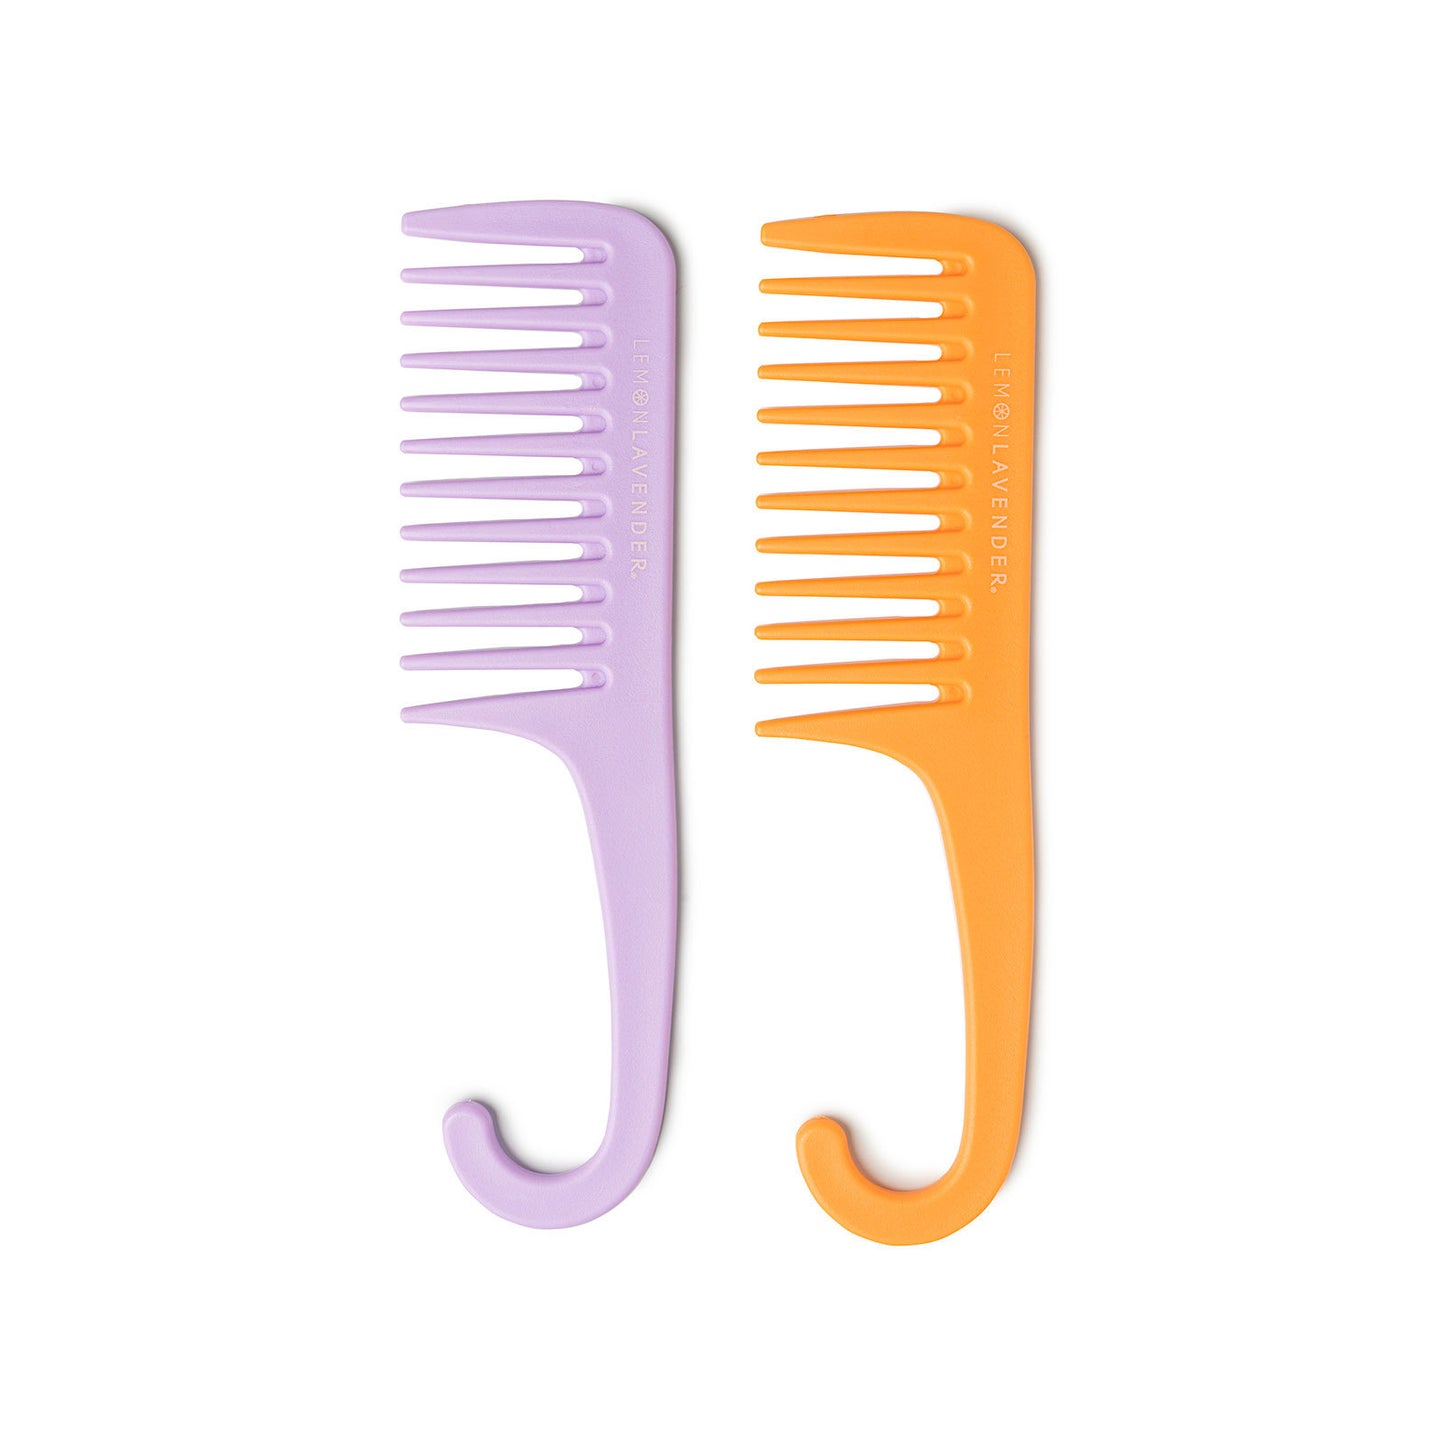 Knot Today Detangling Shower Comb - Lavender & Orange